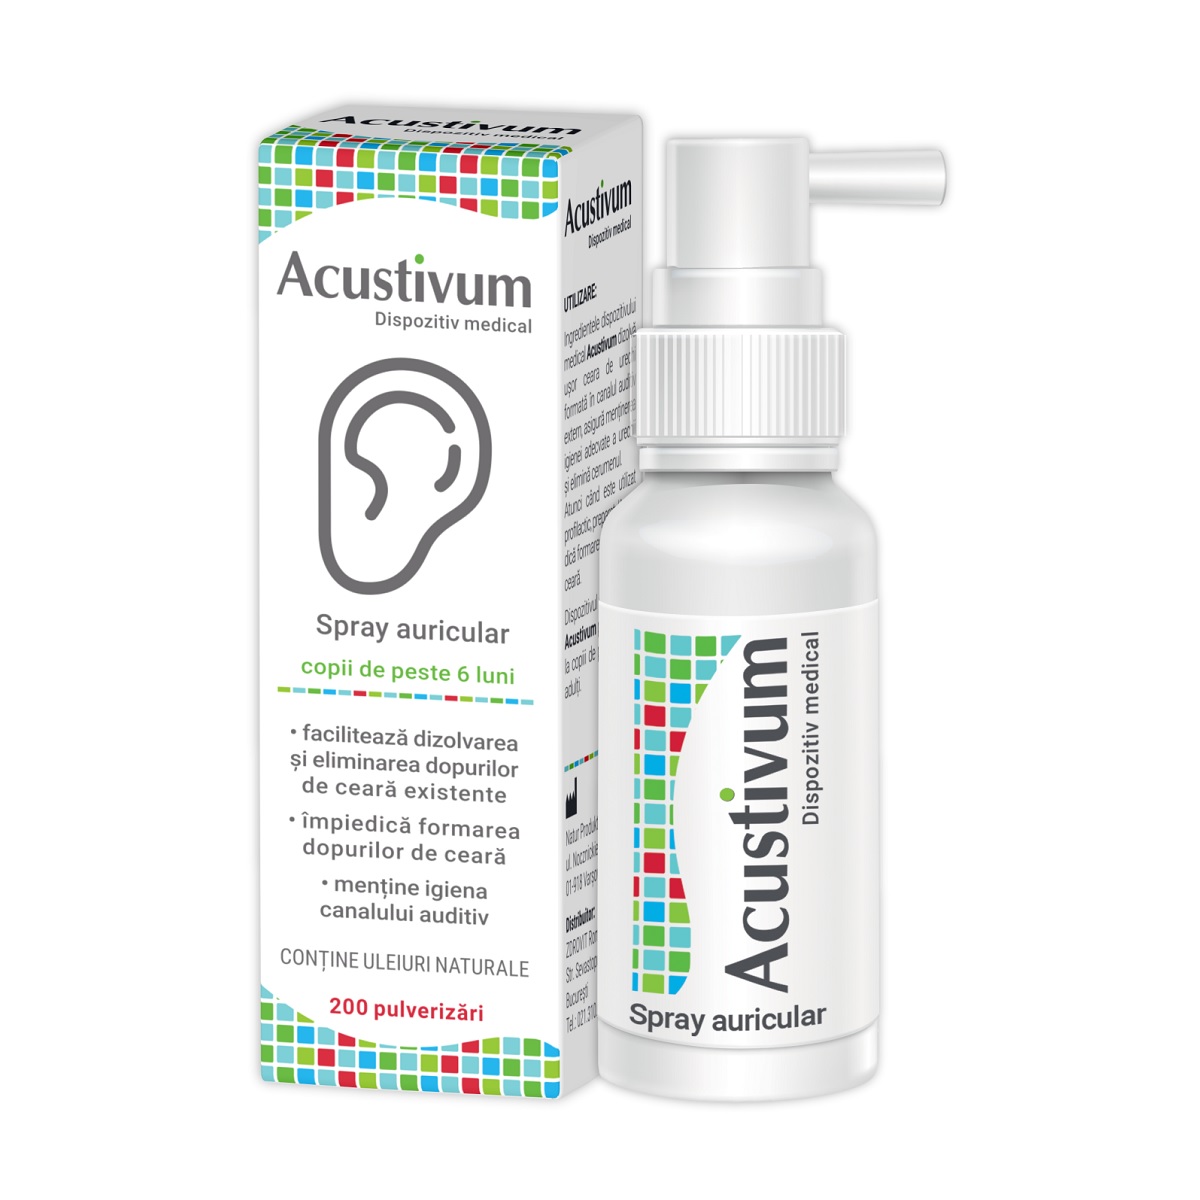 Acustivum spray auricular 20ml